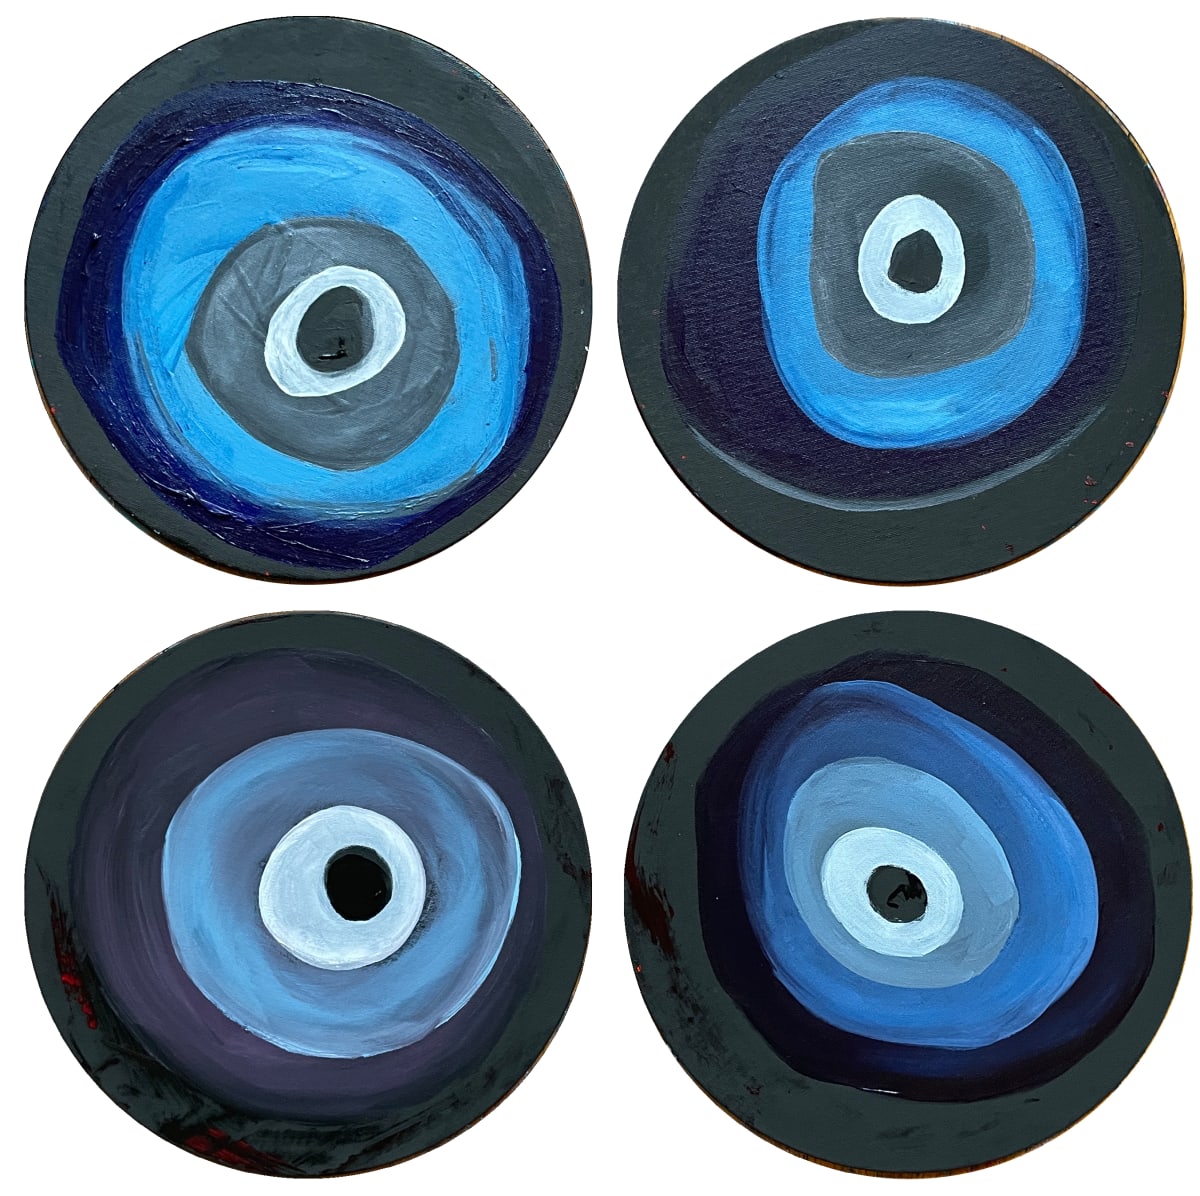 Mati (Evil Eye) 1-2-3-4 by Tina Psoinos  Image: Mati (Evil Eye) variations